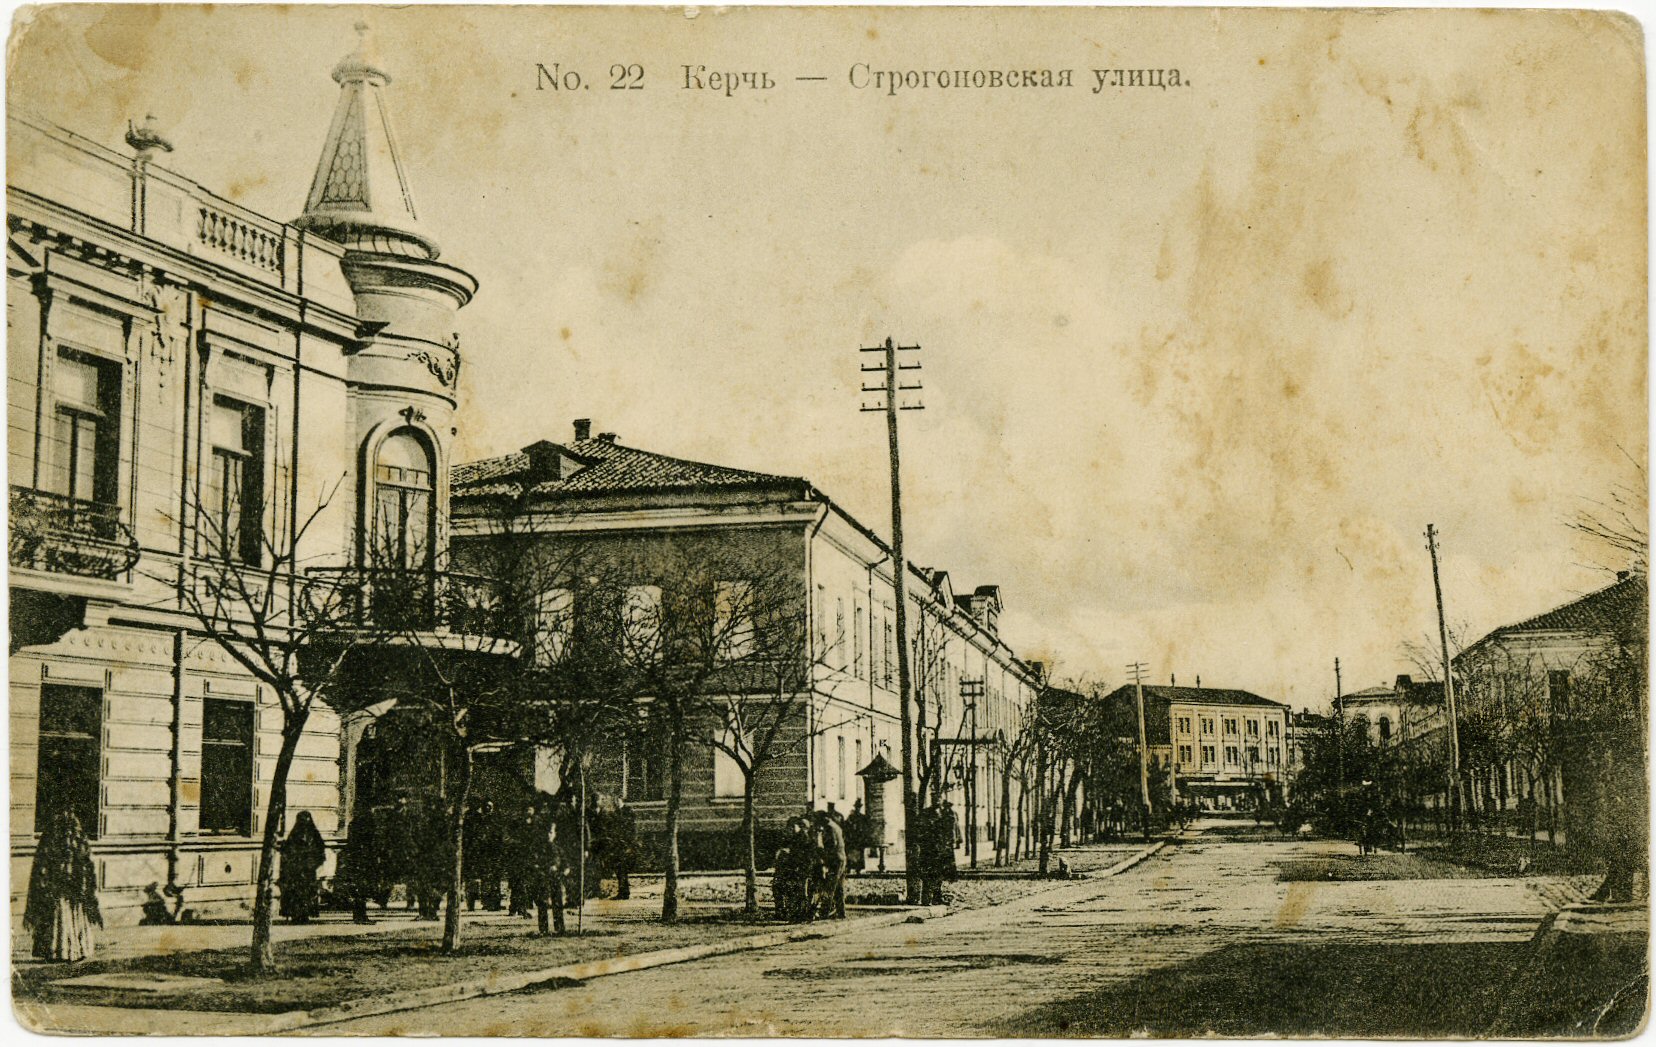 cartolina da kerč (Crimea)